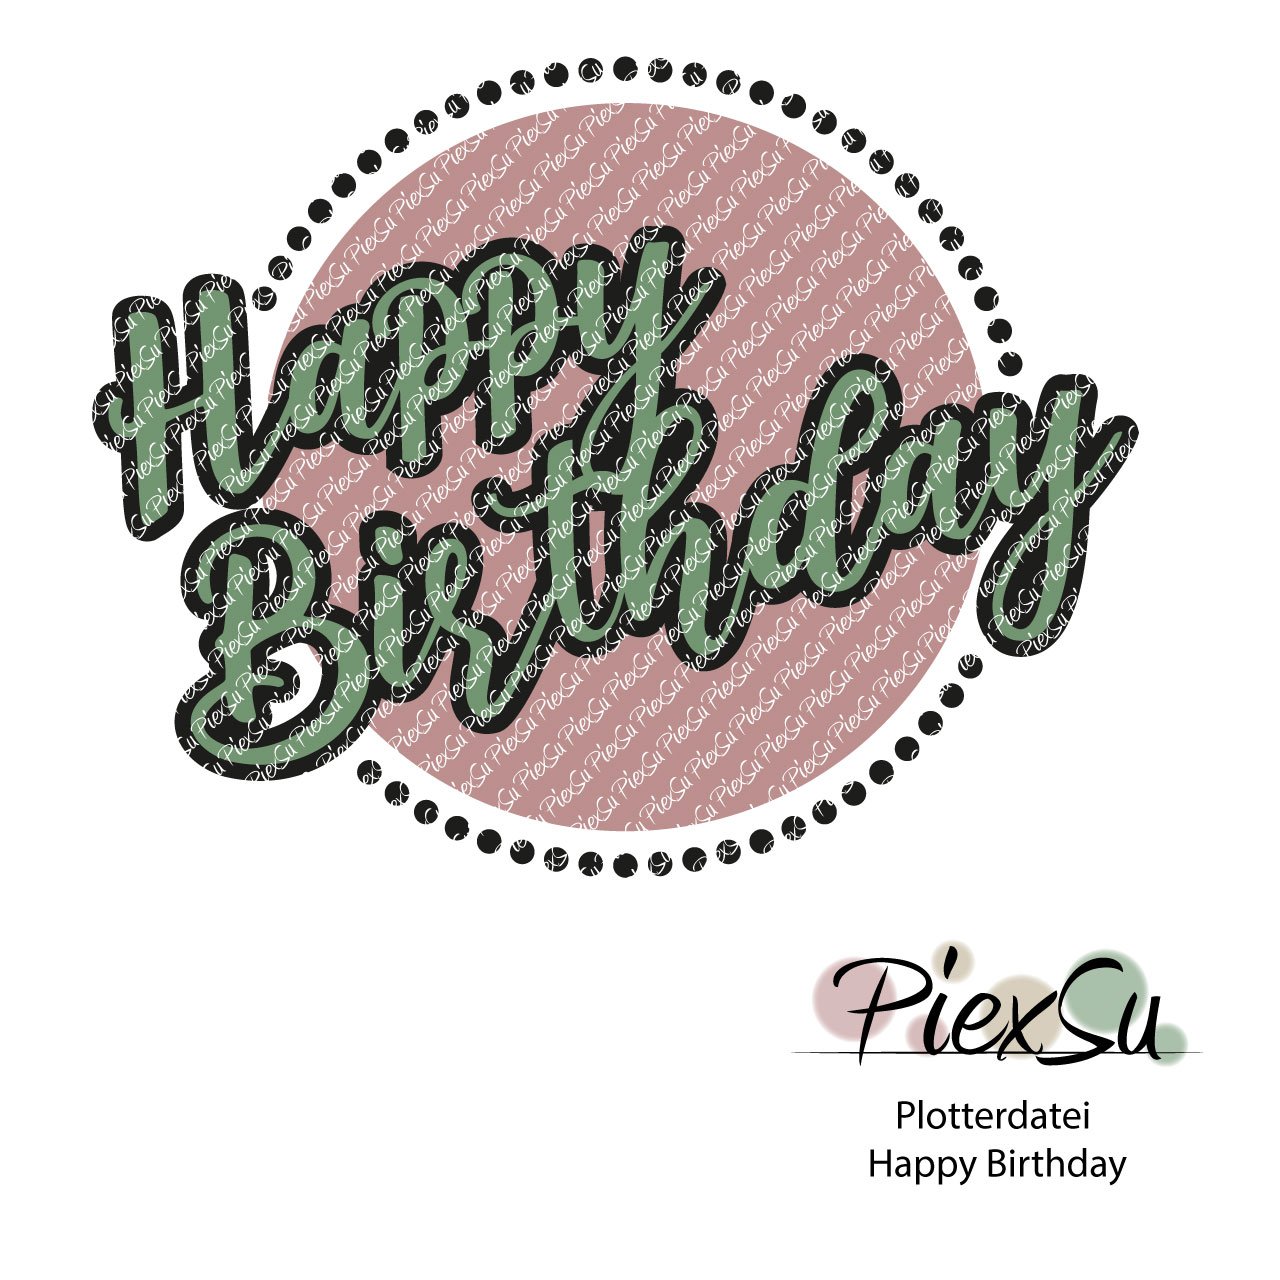 PiexSu-Plotterdatei-Happy-Birthday-plotten-dxf-svg-Titelbild